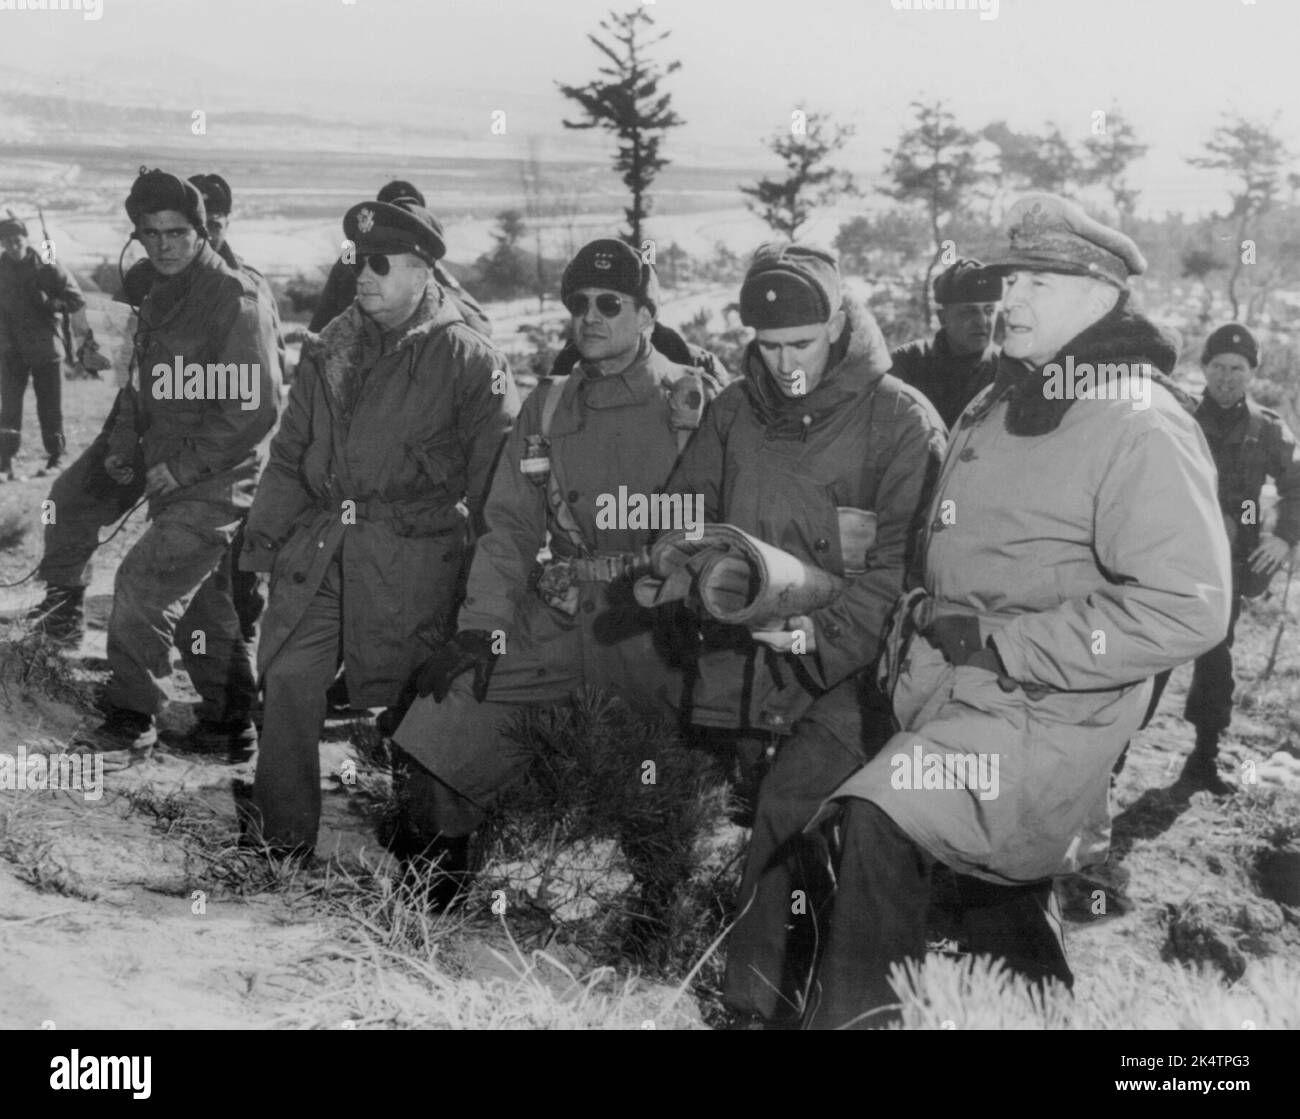 SUWAN, COREA - 28 de enero de 1951 - El General del Ejército de los Estados Unidos Douglas MacArthur, el General de División Courtney Whitney, el General de División Matthew B Ridgway y el General de División WI Foto de stock